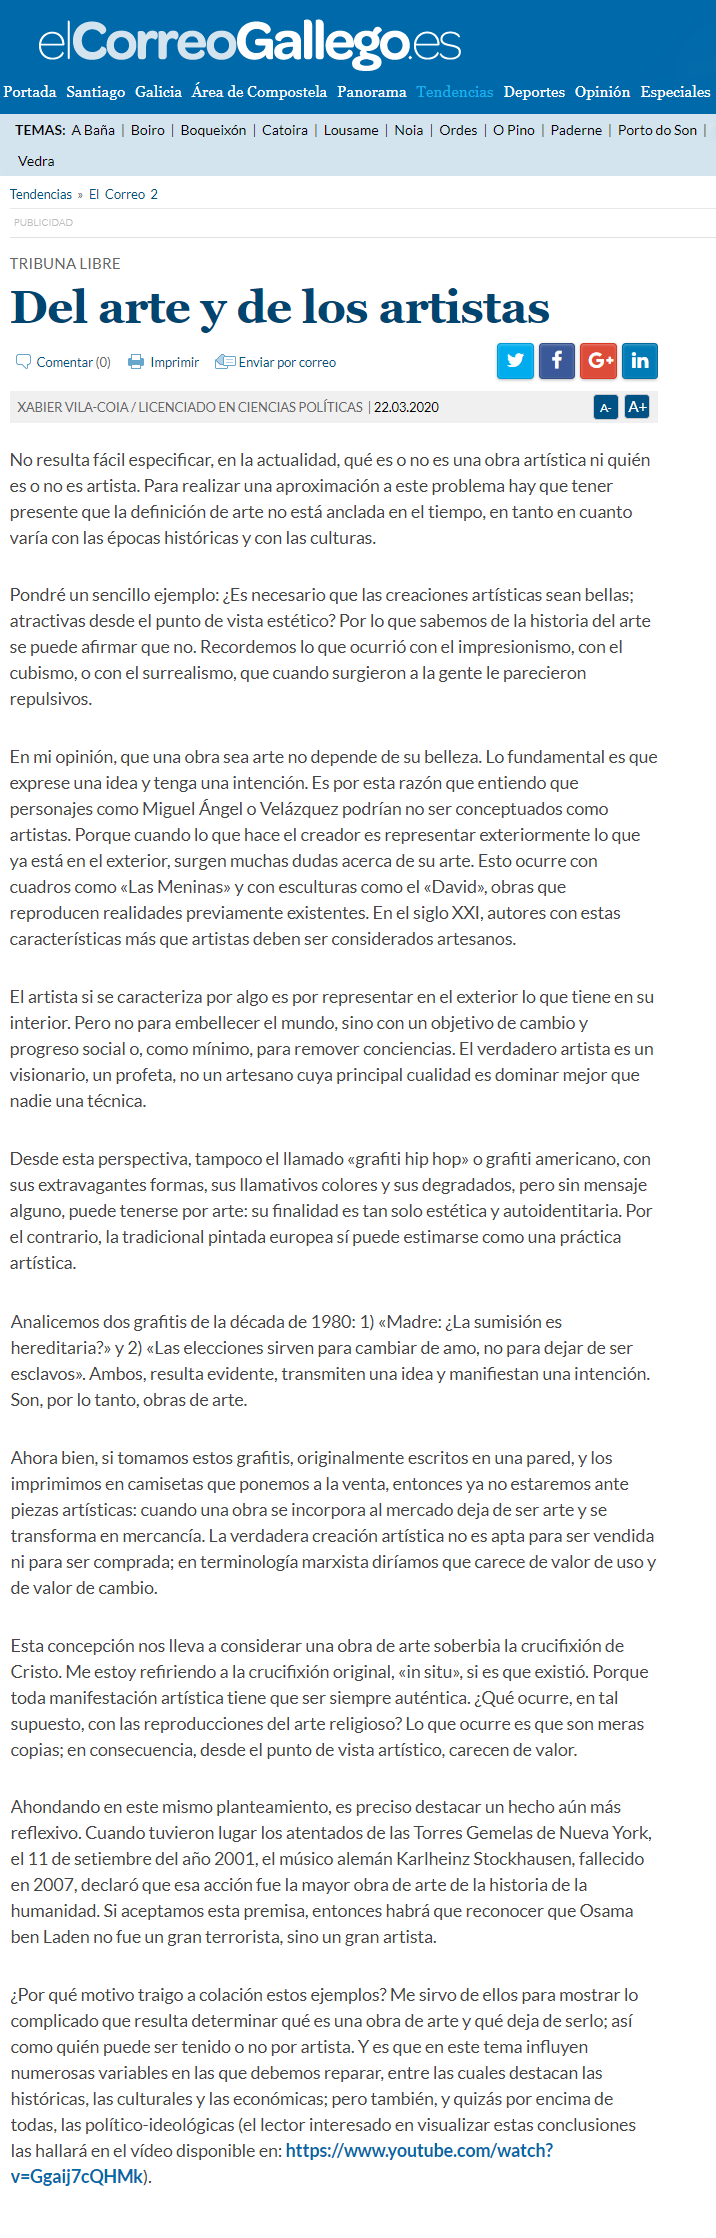 Artículo de opinión de Xabier Vila-Coia titulado "Del arte y de los artistas", pubilicado en marzo de 2020 en Atlántico Diario y en El Correo Gallego.